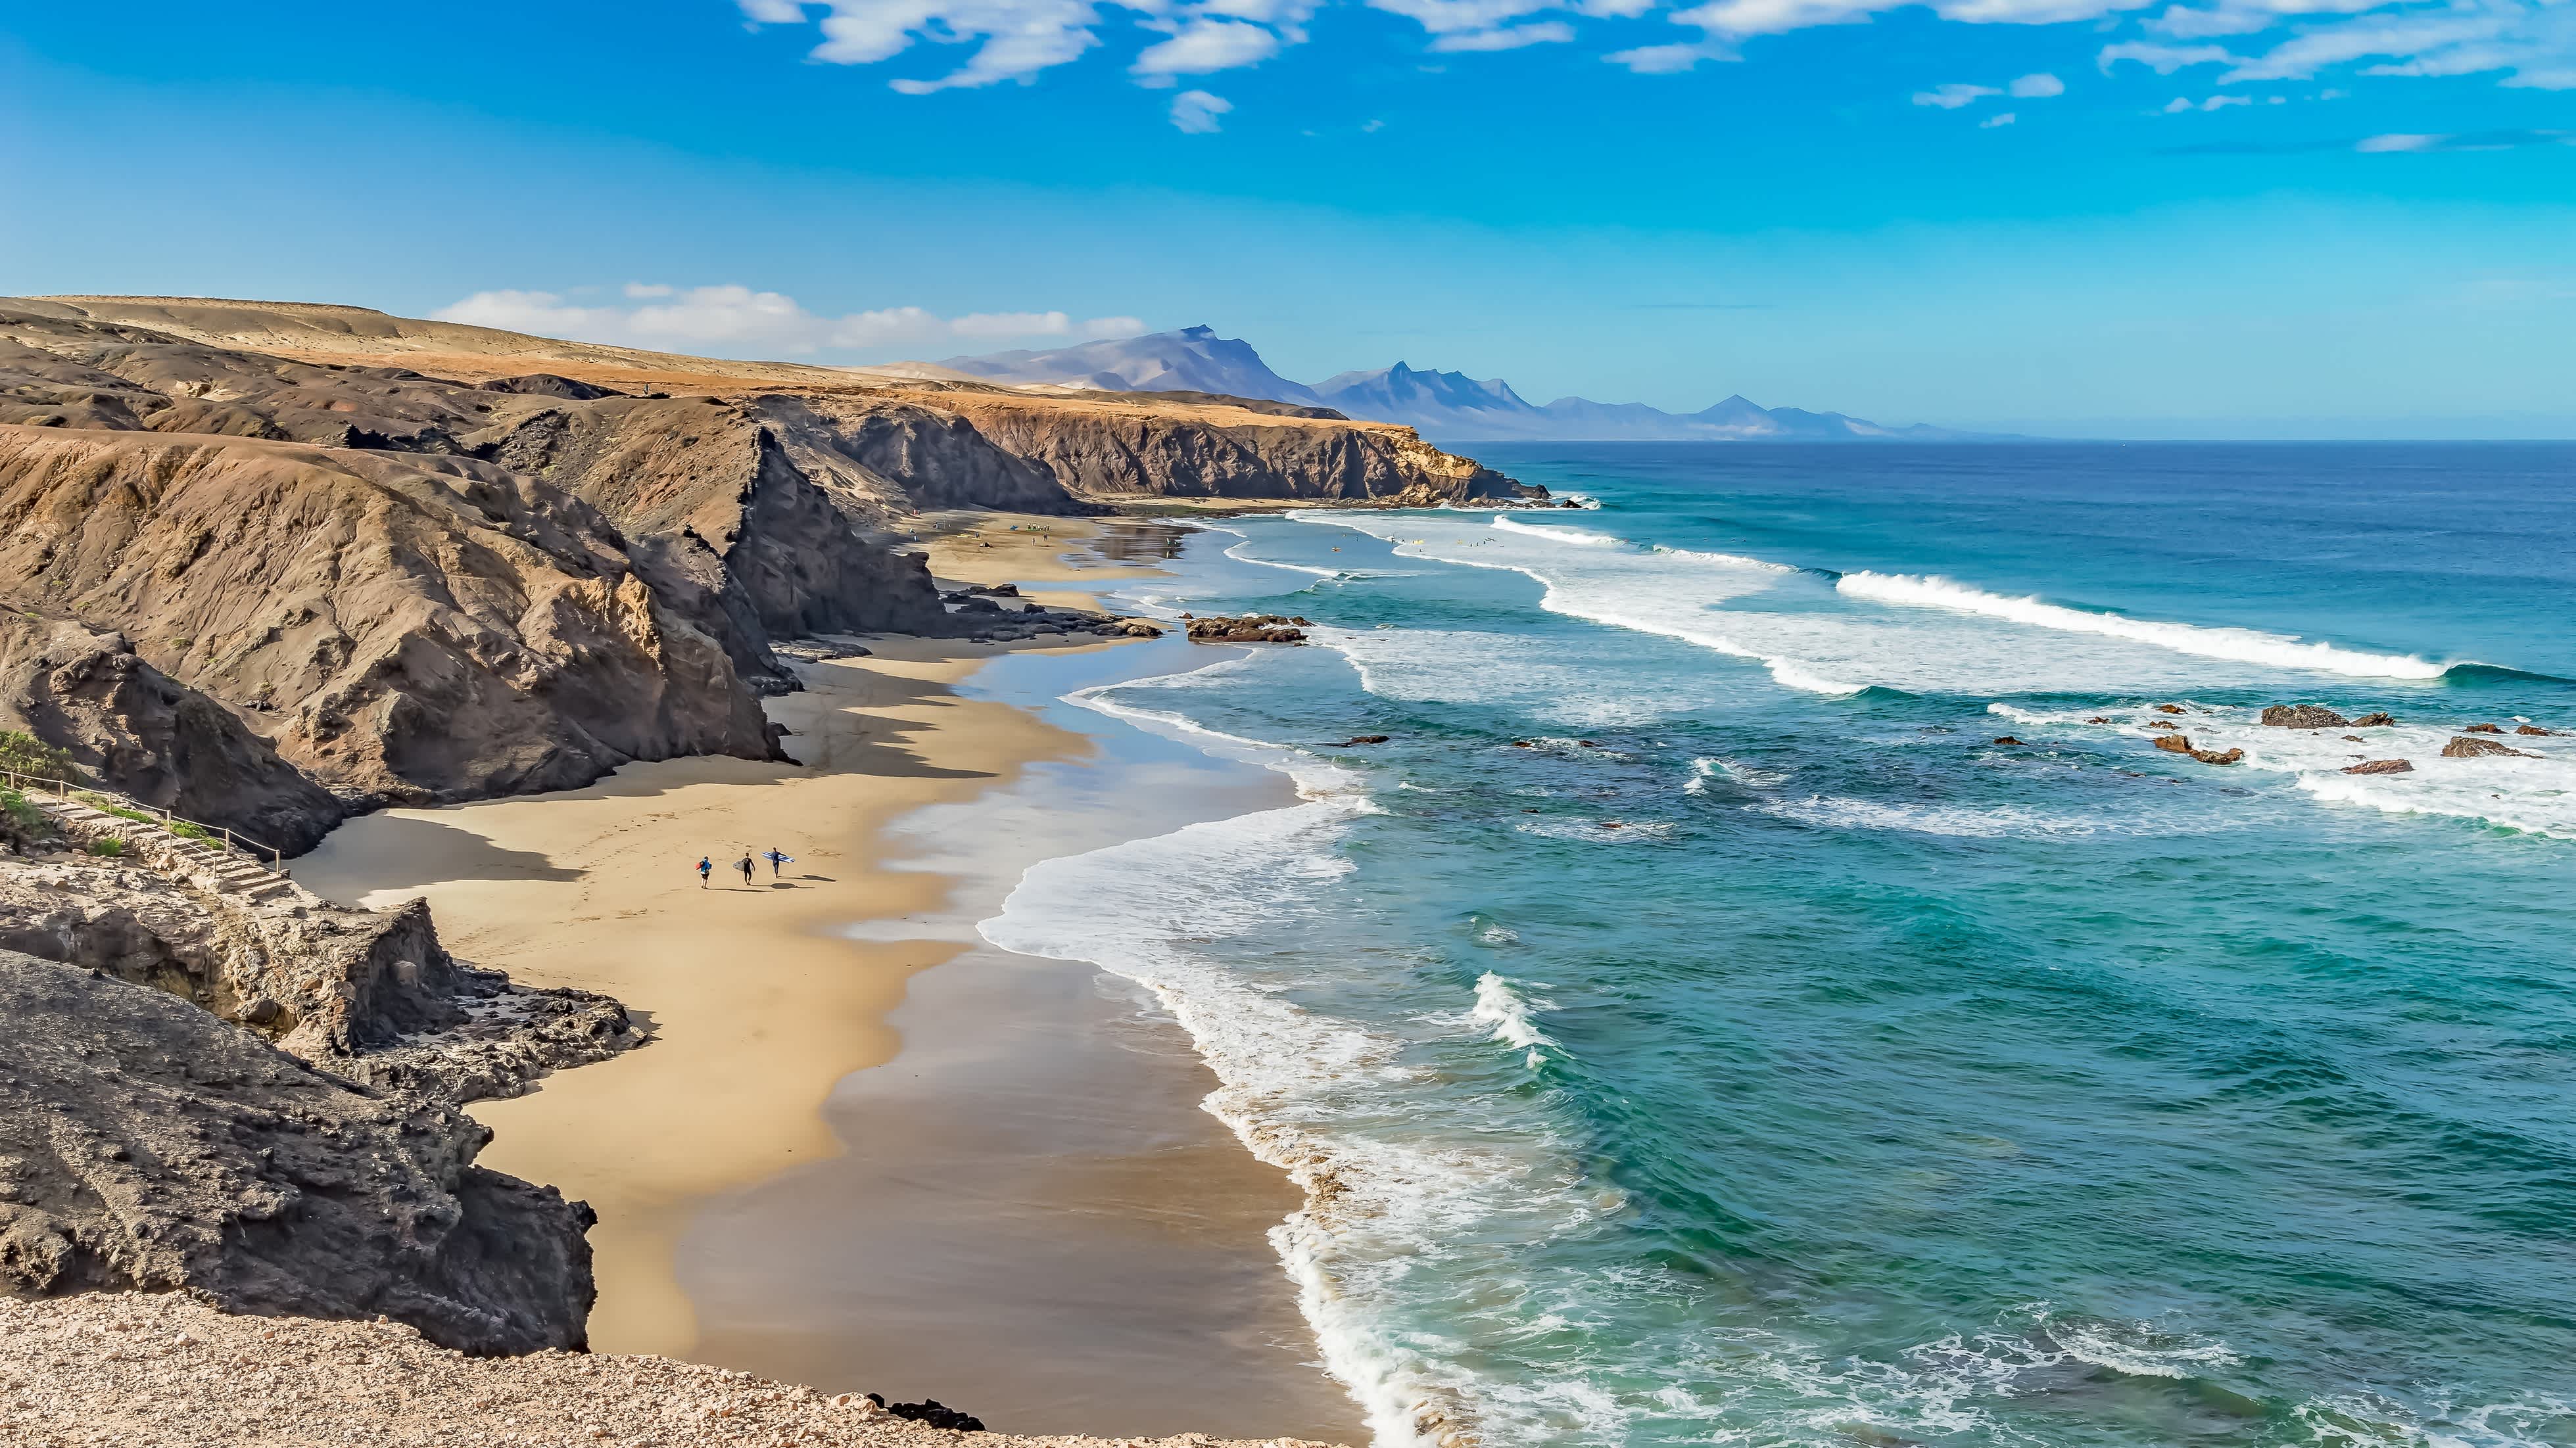 Fuerte Ventura est une île très prisée pour des vacances aux Canaries en raison de ses plages.